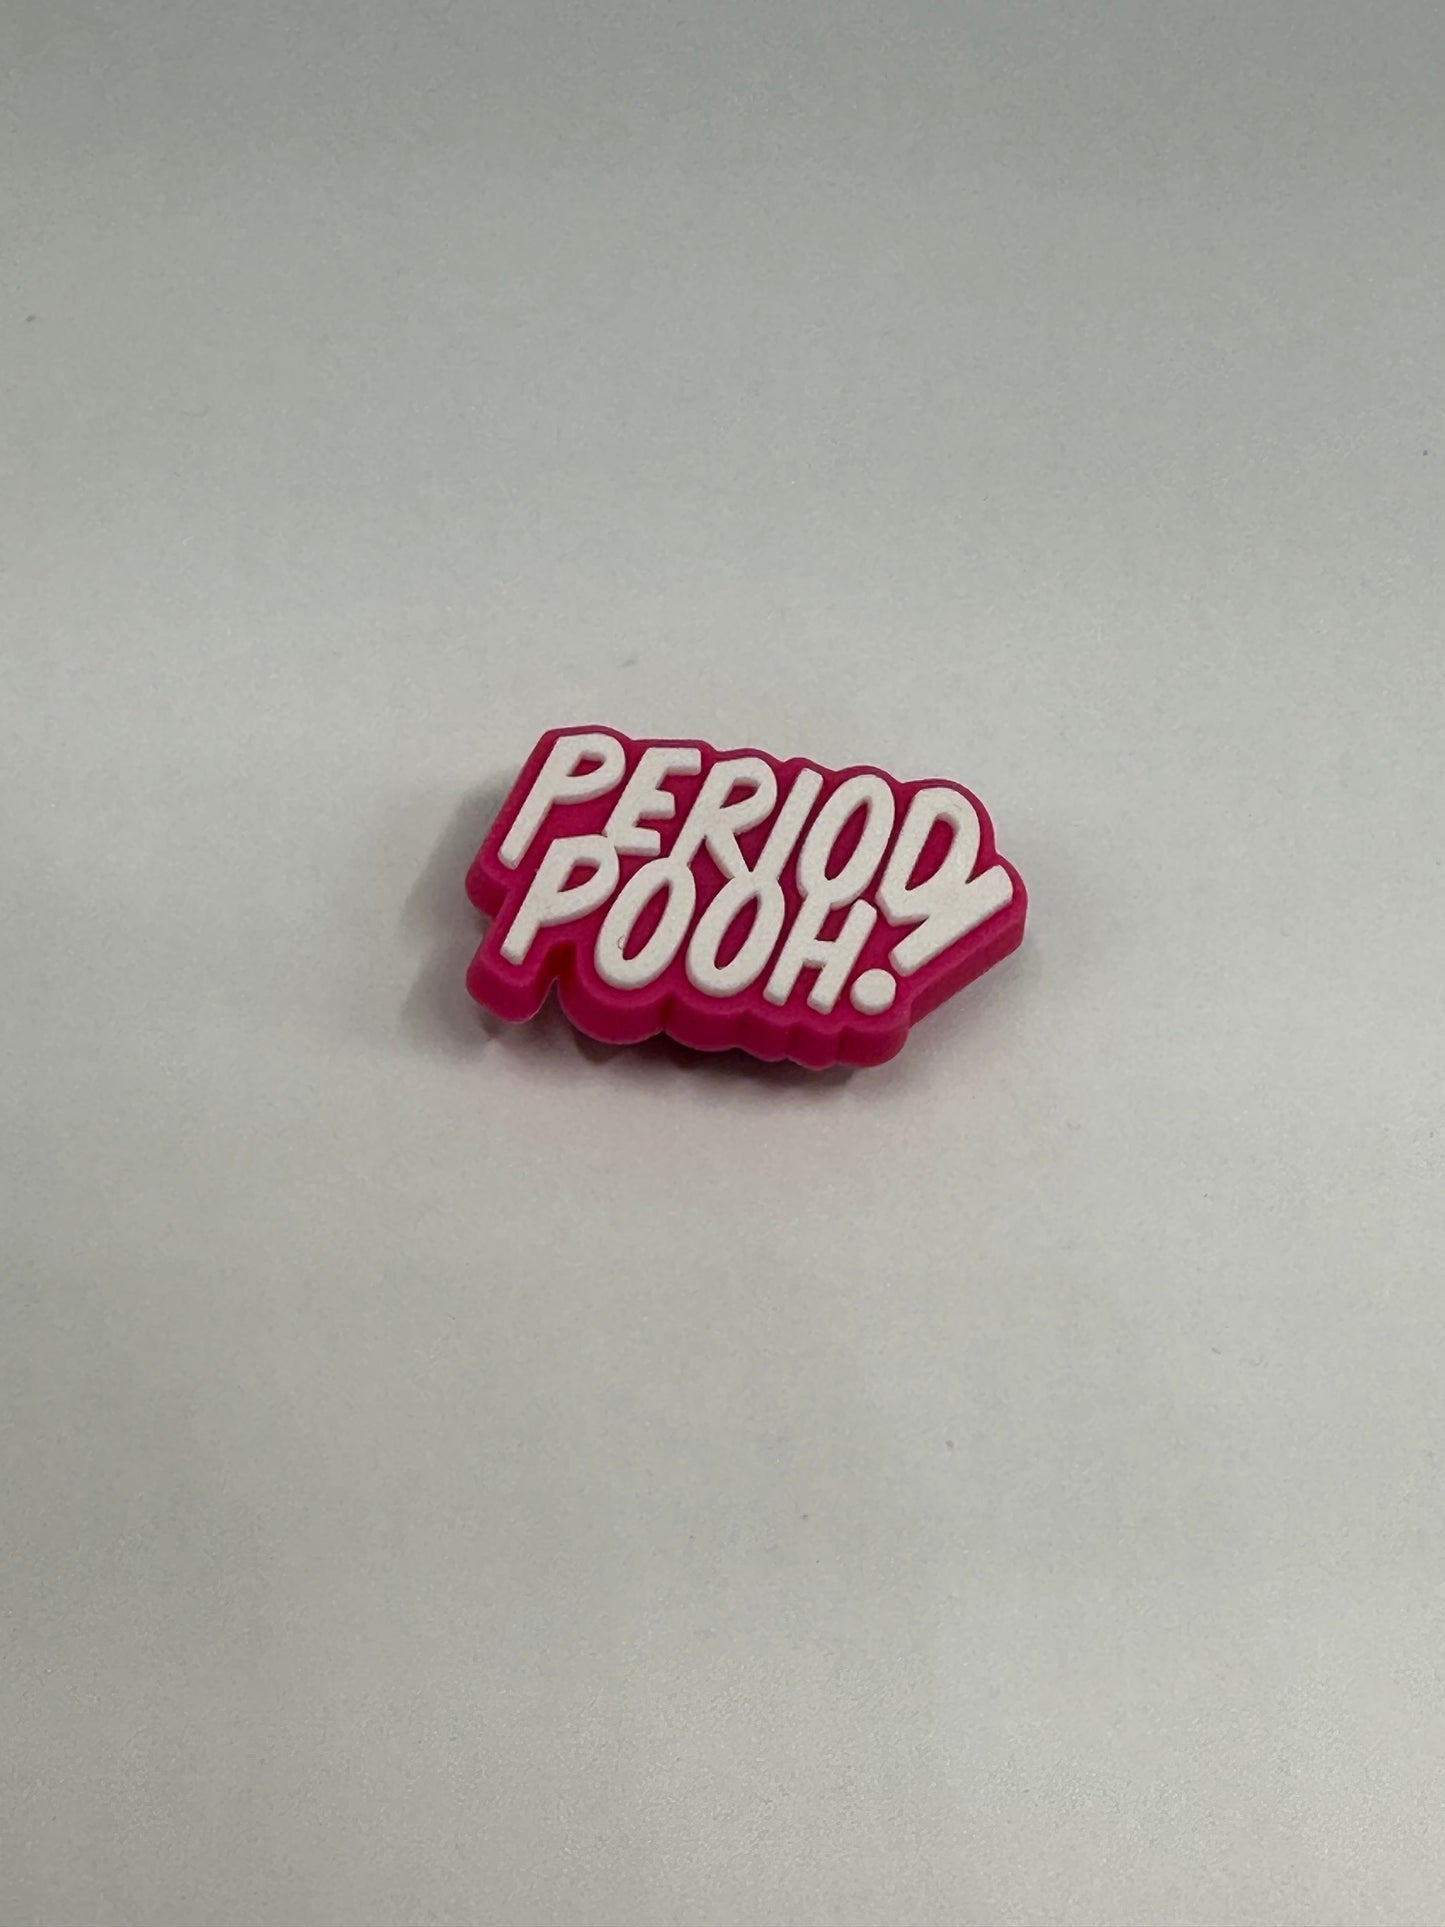 Period Pooh